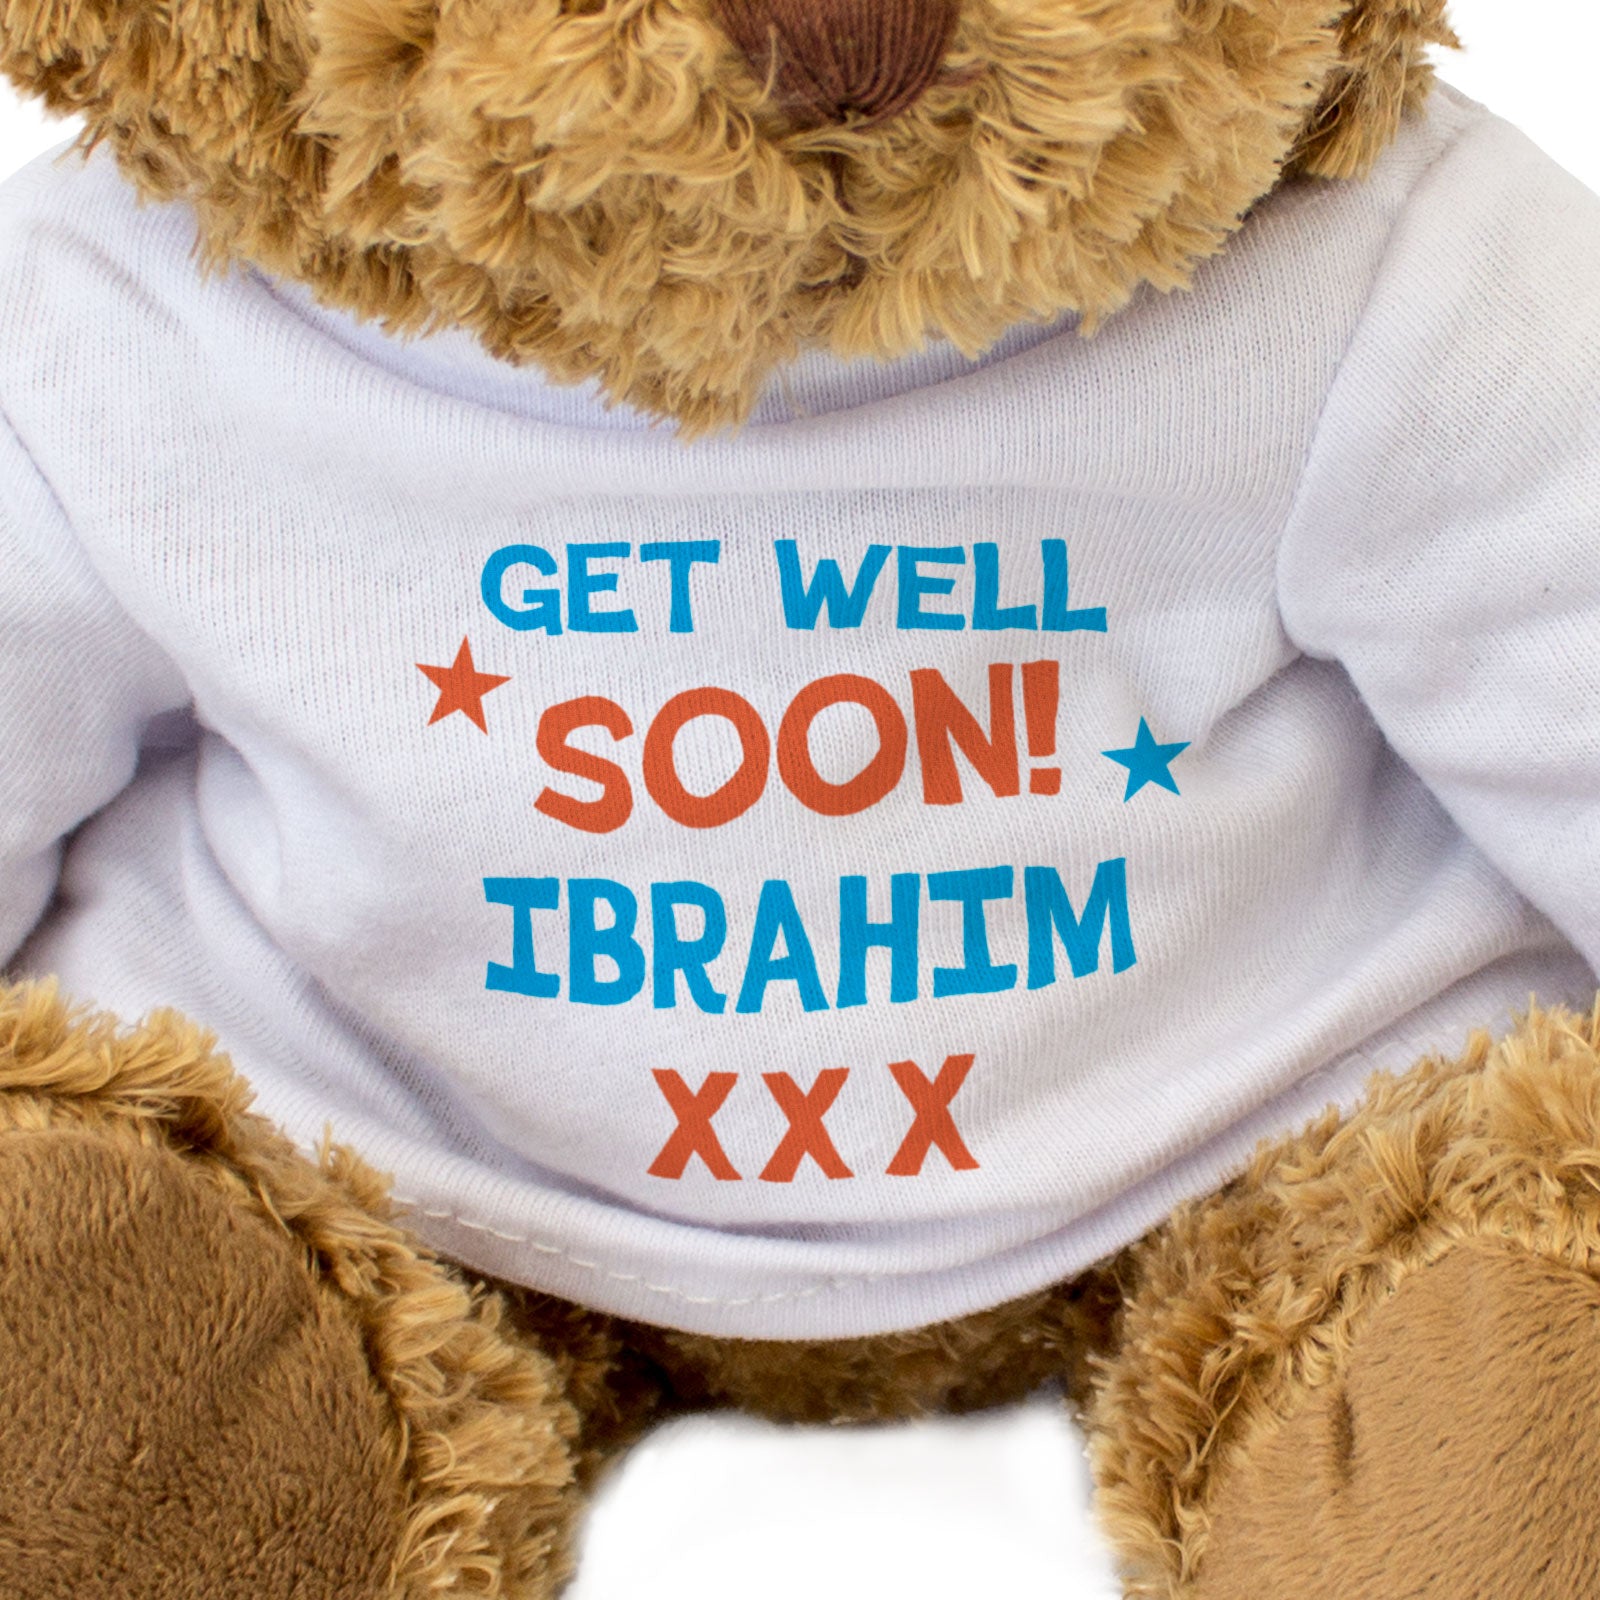 Get Well Soon Ibrahim - Teddy Bear